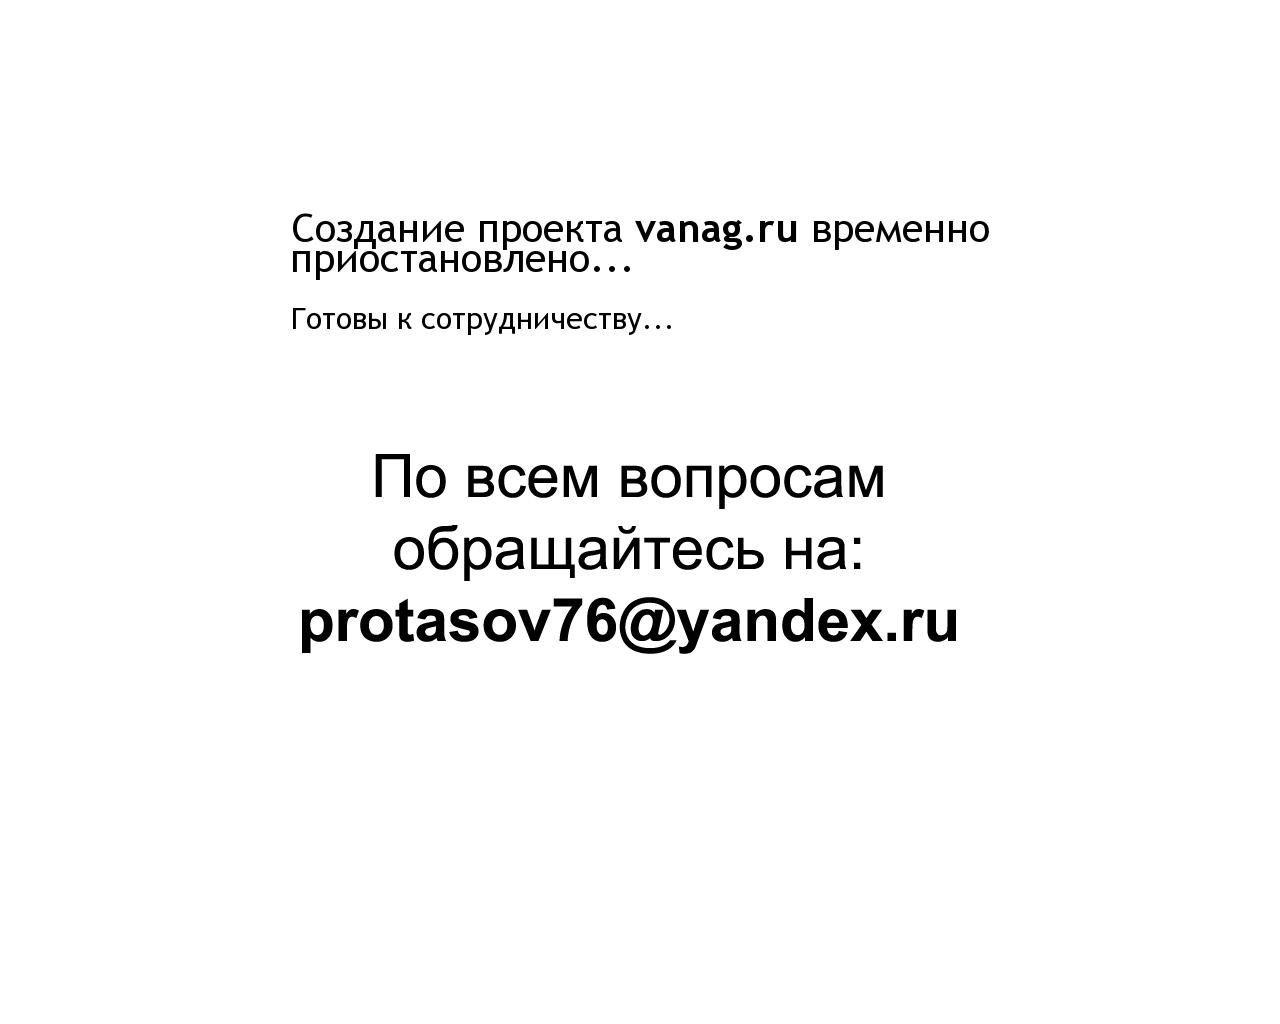 Изображение сайта vanag.ru в разрешении 1280x1024